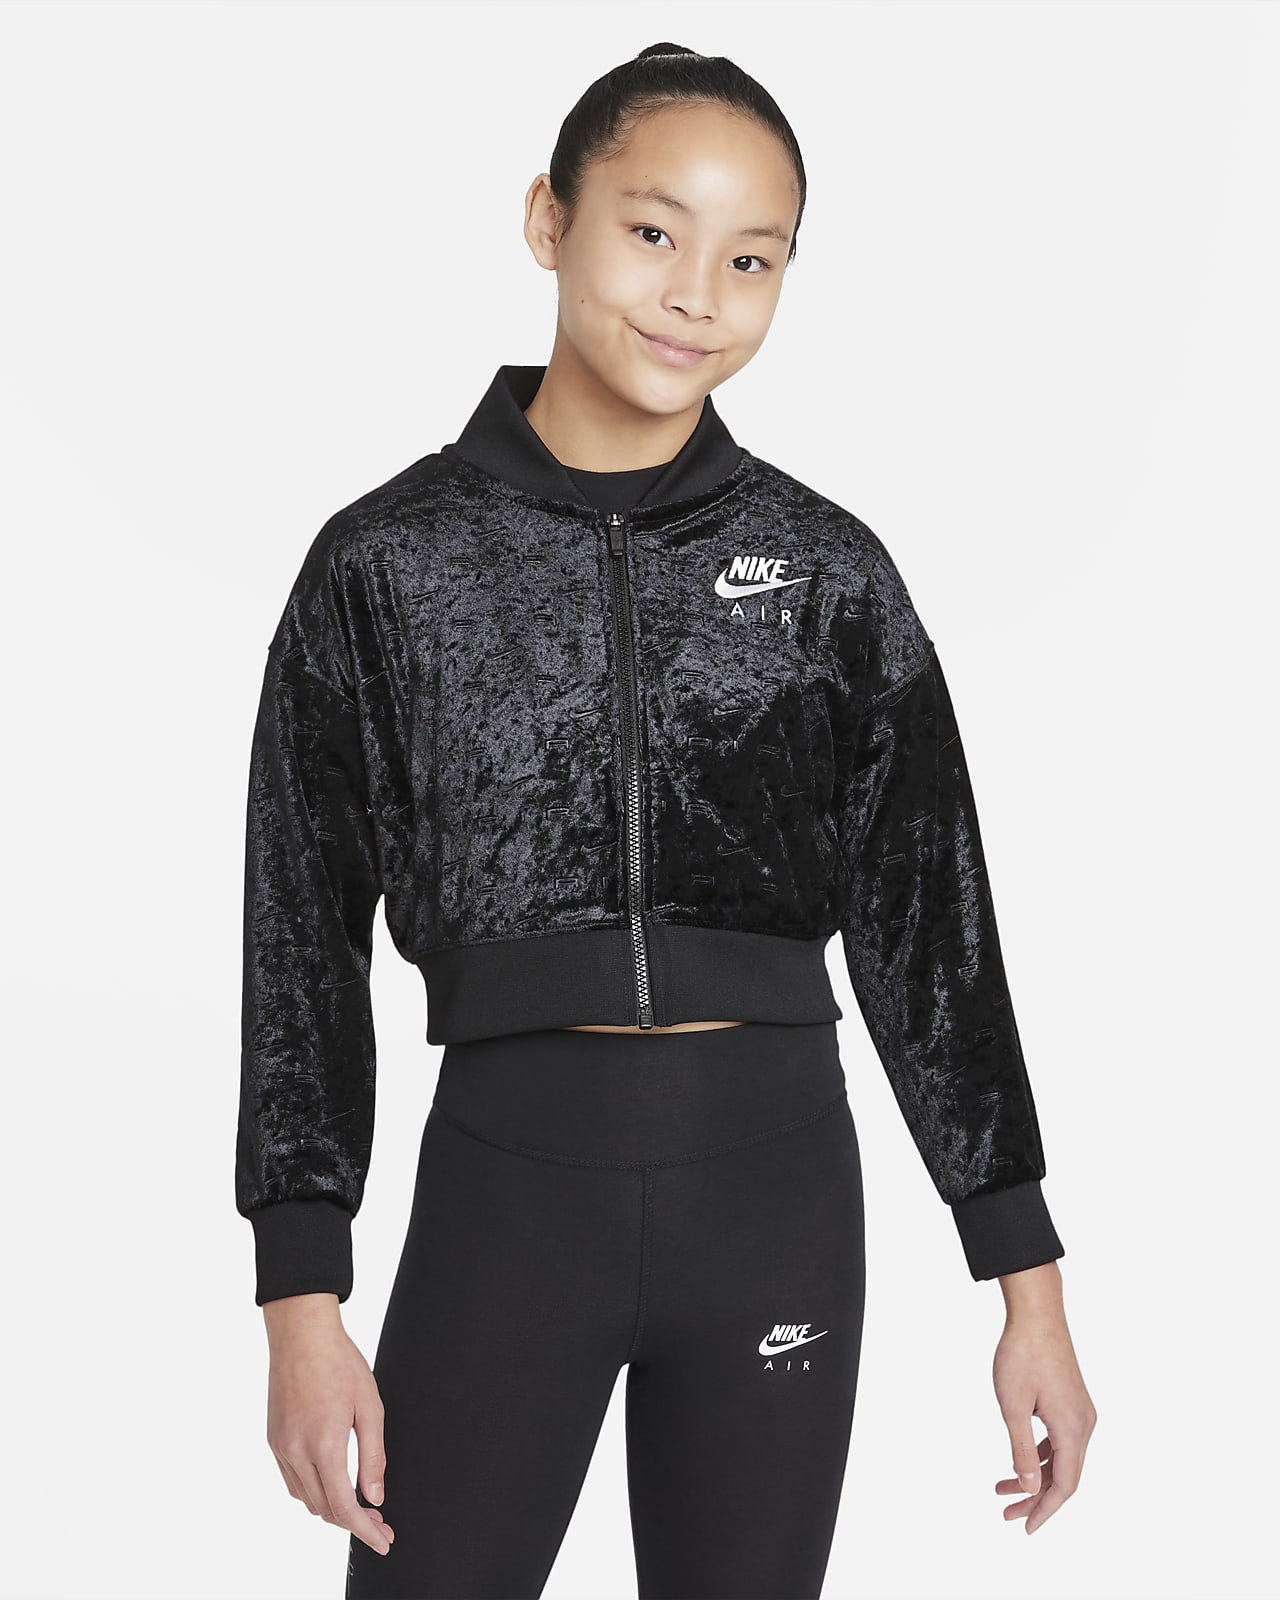 Nike Air kurze Jacke für ältere Kinder (Mädchen)